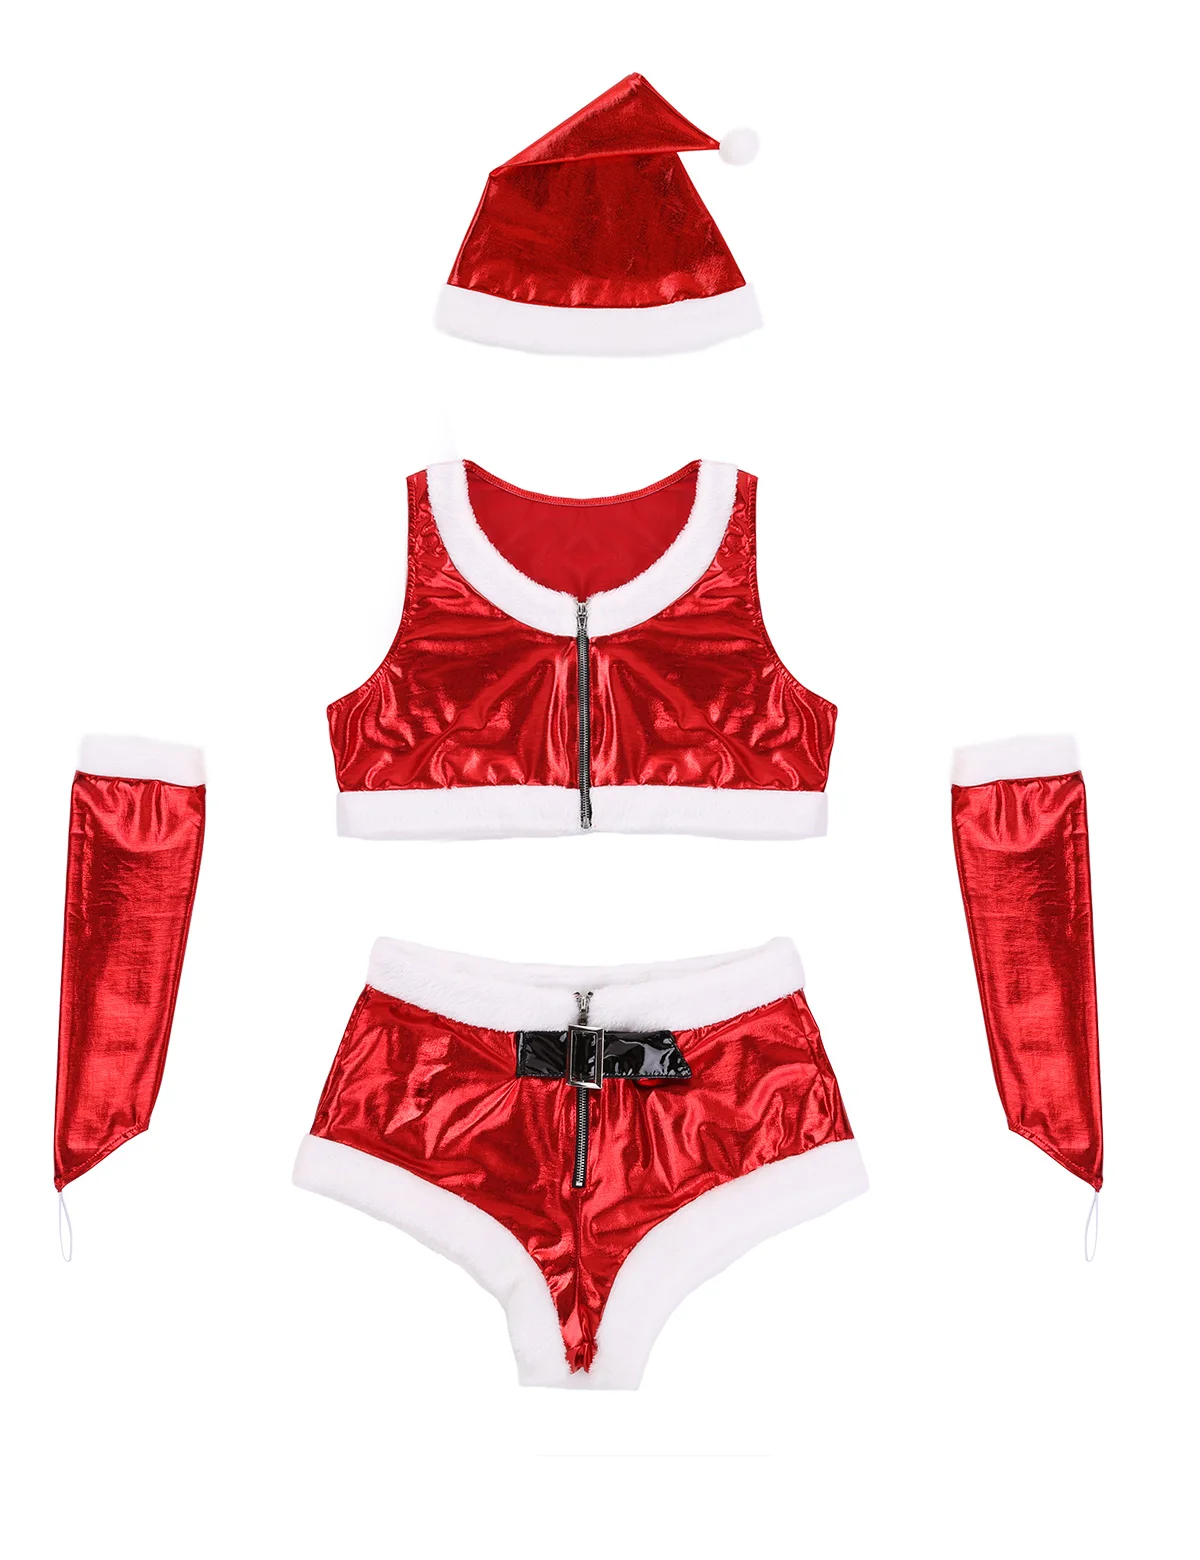 Женский карнавальный костюм Санта-Клауса, Рождественский нарядный наряд, блестящий металлический укороченный топ и шорты, Новогодняя одежда для ролевых игр - Цвет: Red